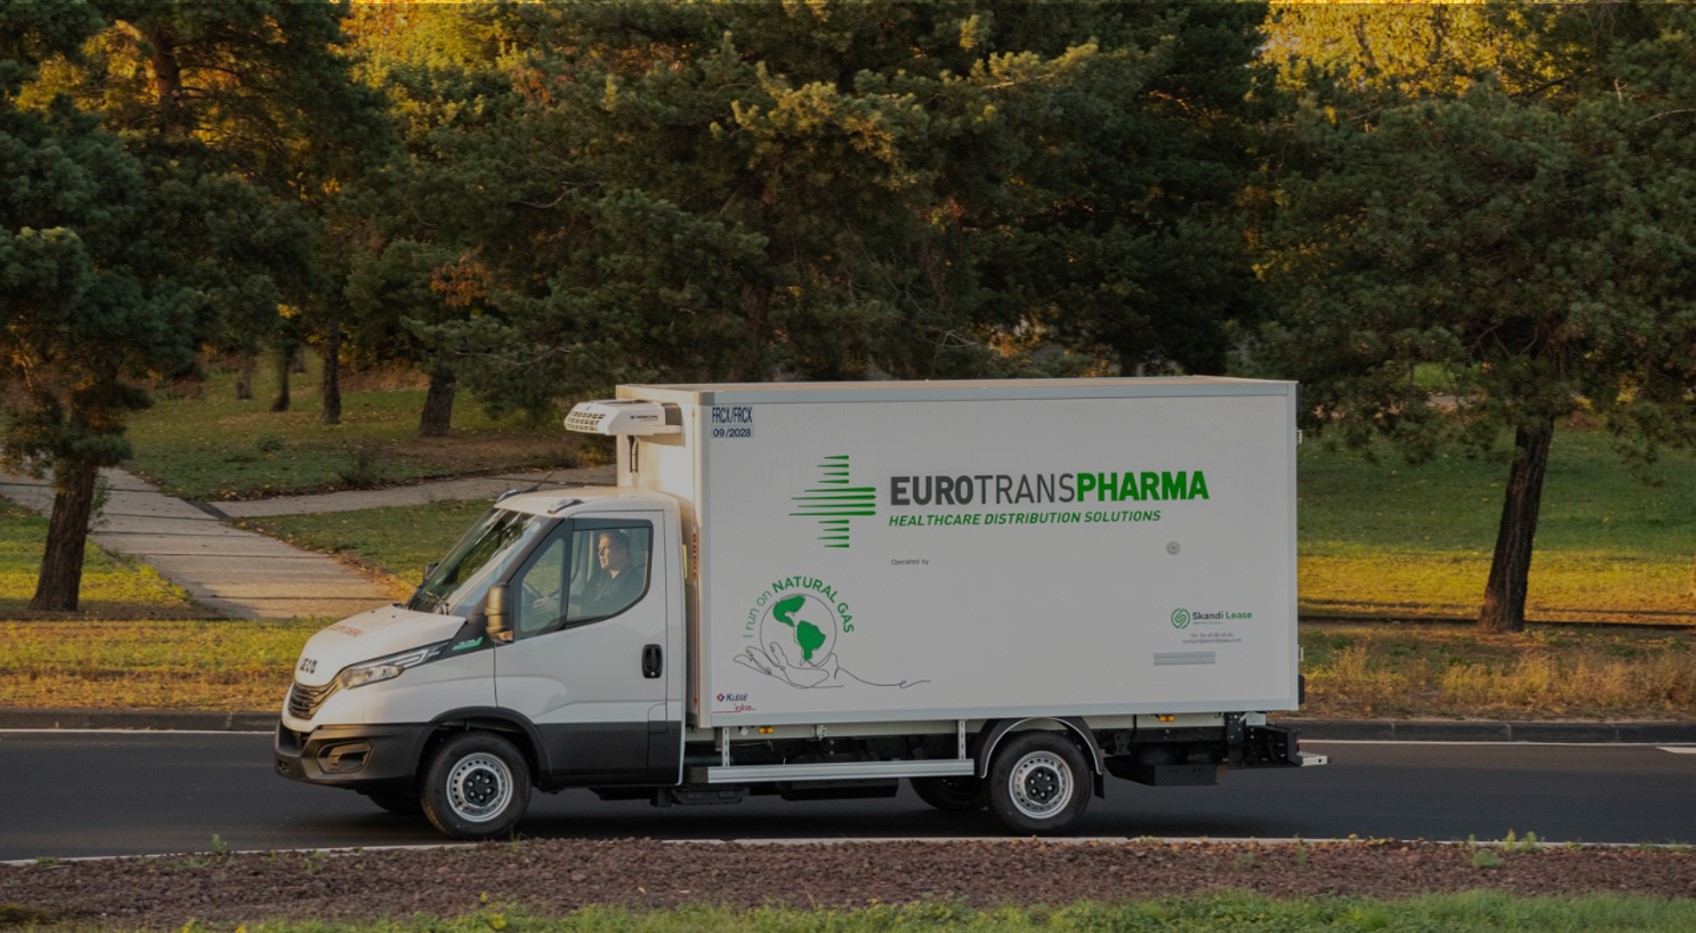 Transportnetz von Eurotranspharma bereit für den deutschen Markt